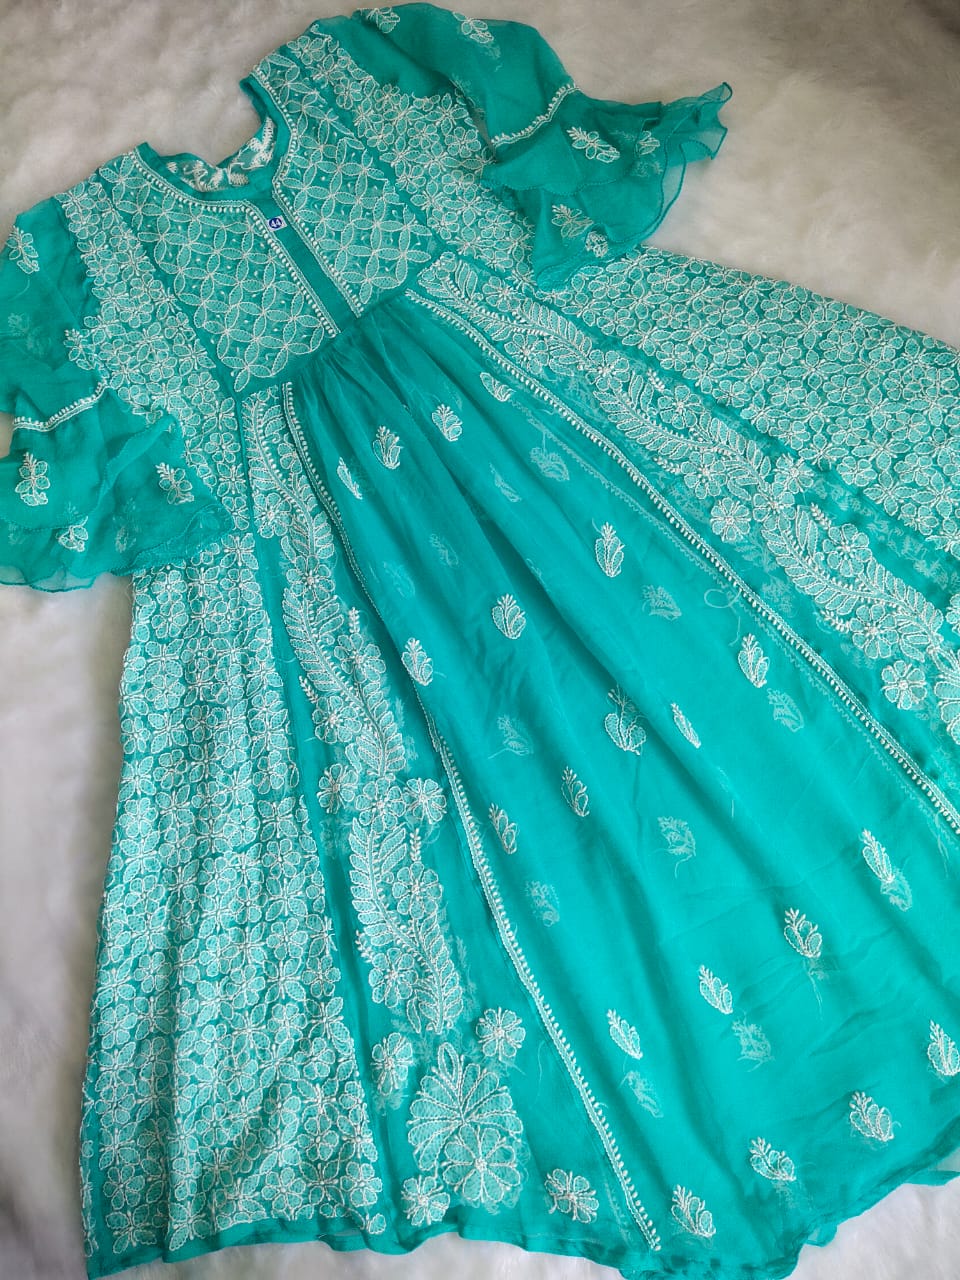 Fepic Rosemeen C 1688 Organza Dress Material Mumbai Wholesaler